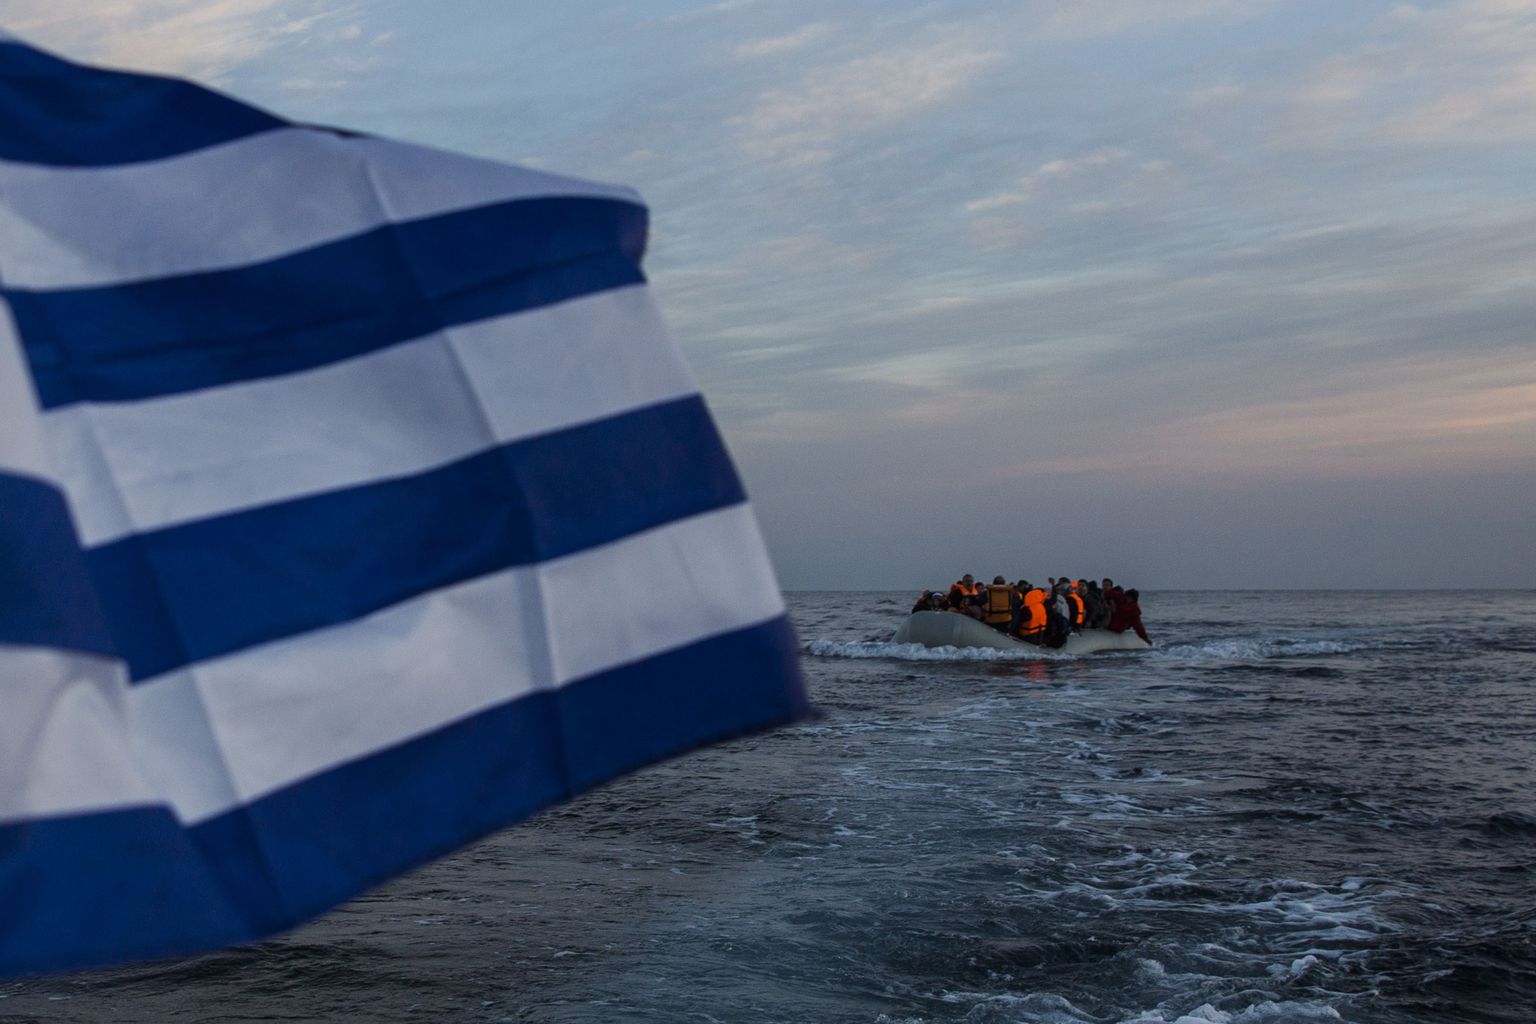 Kreeka lipp päästelaeval, mis jälgib migrandialuse teekonda Egeuse merel Türgist Kreeka Lesbose saarele.